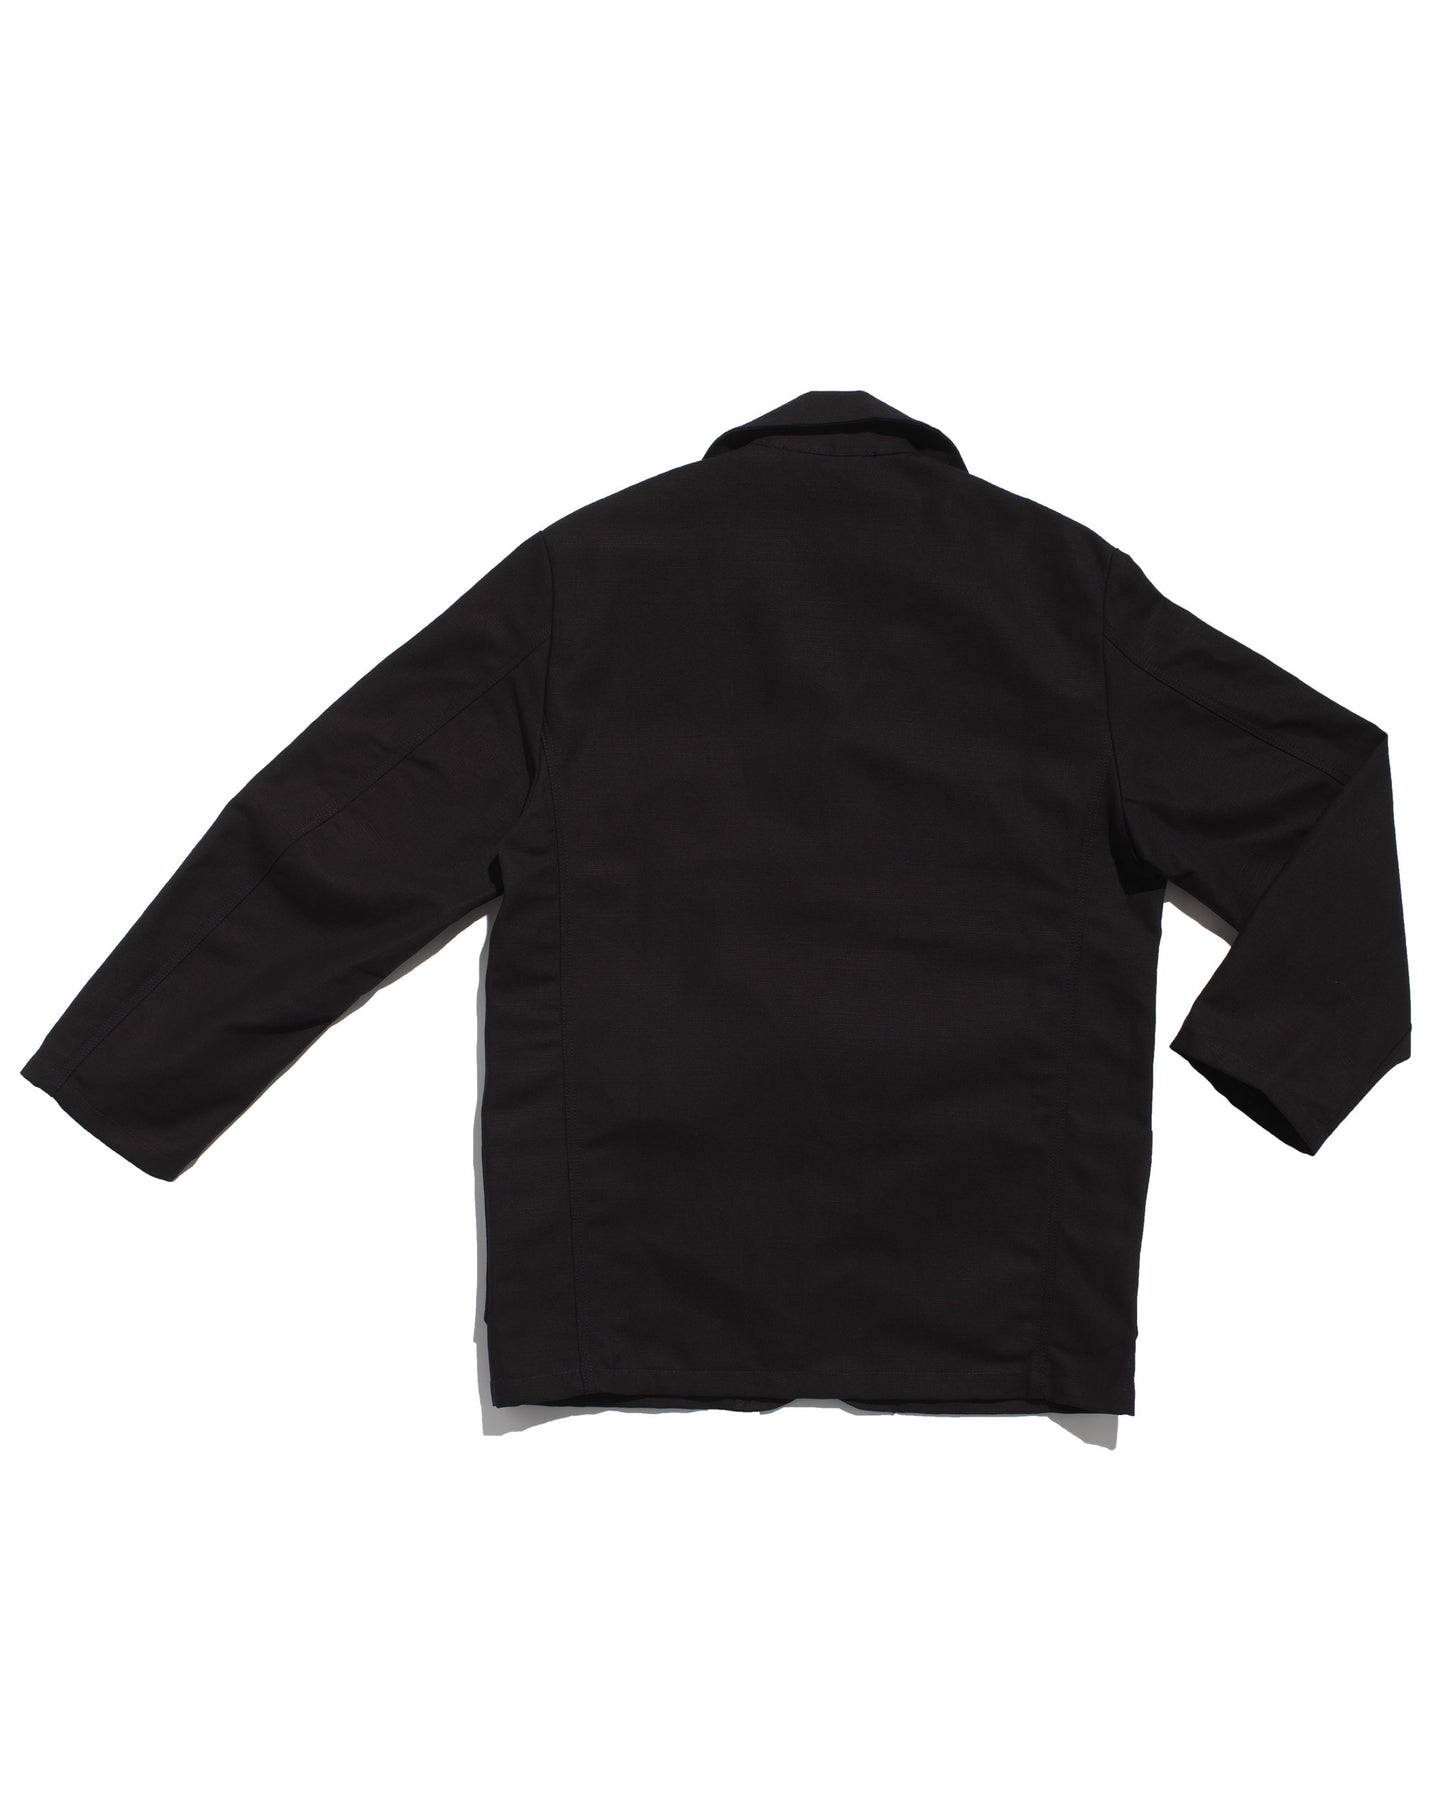 Le Laboureur black linen/cotton sports jacket